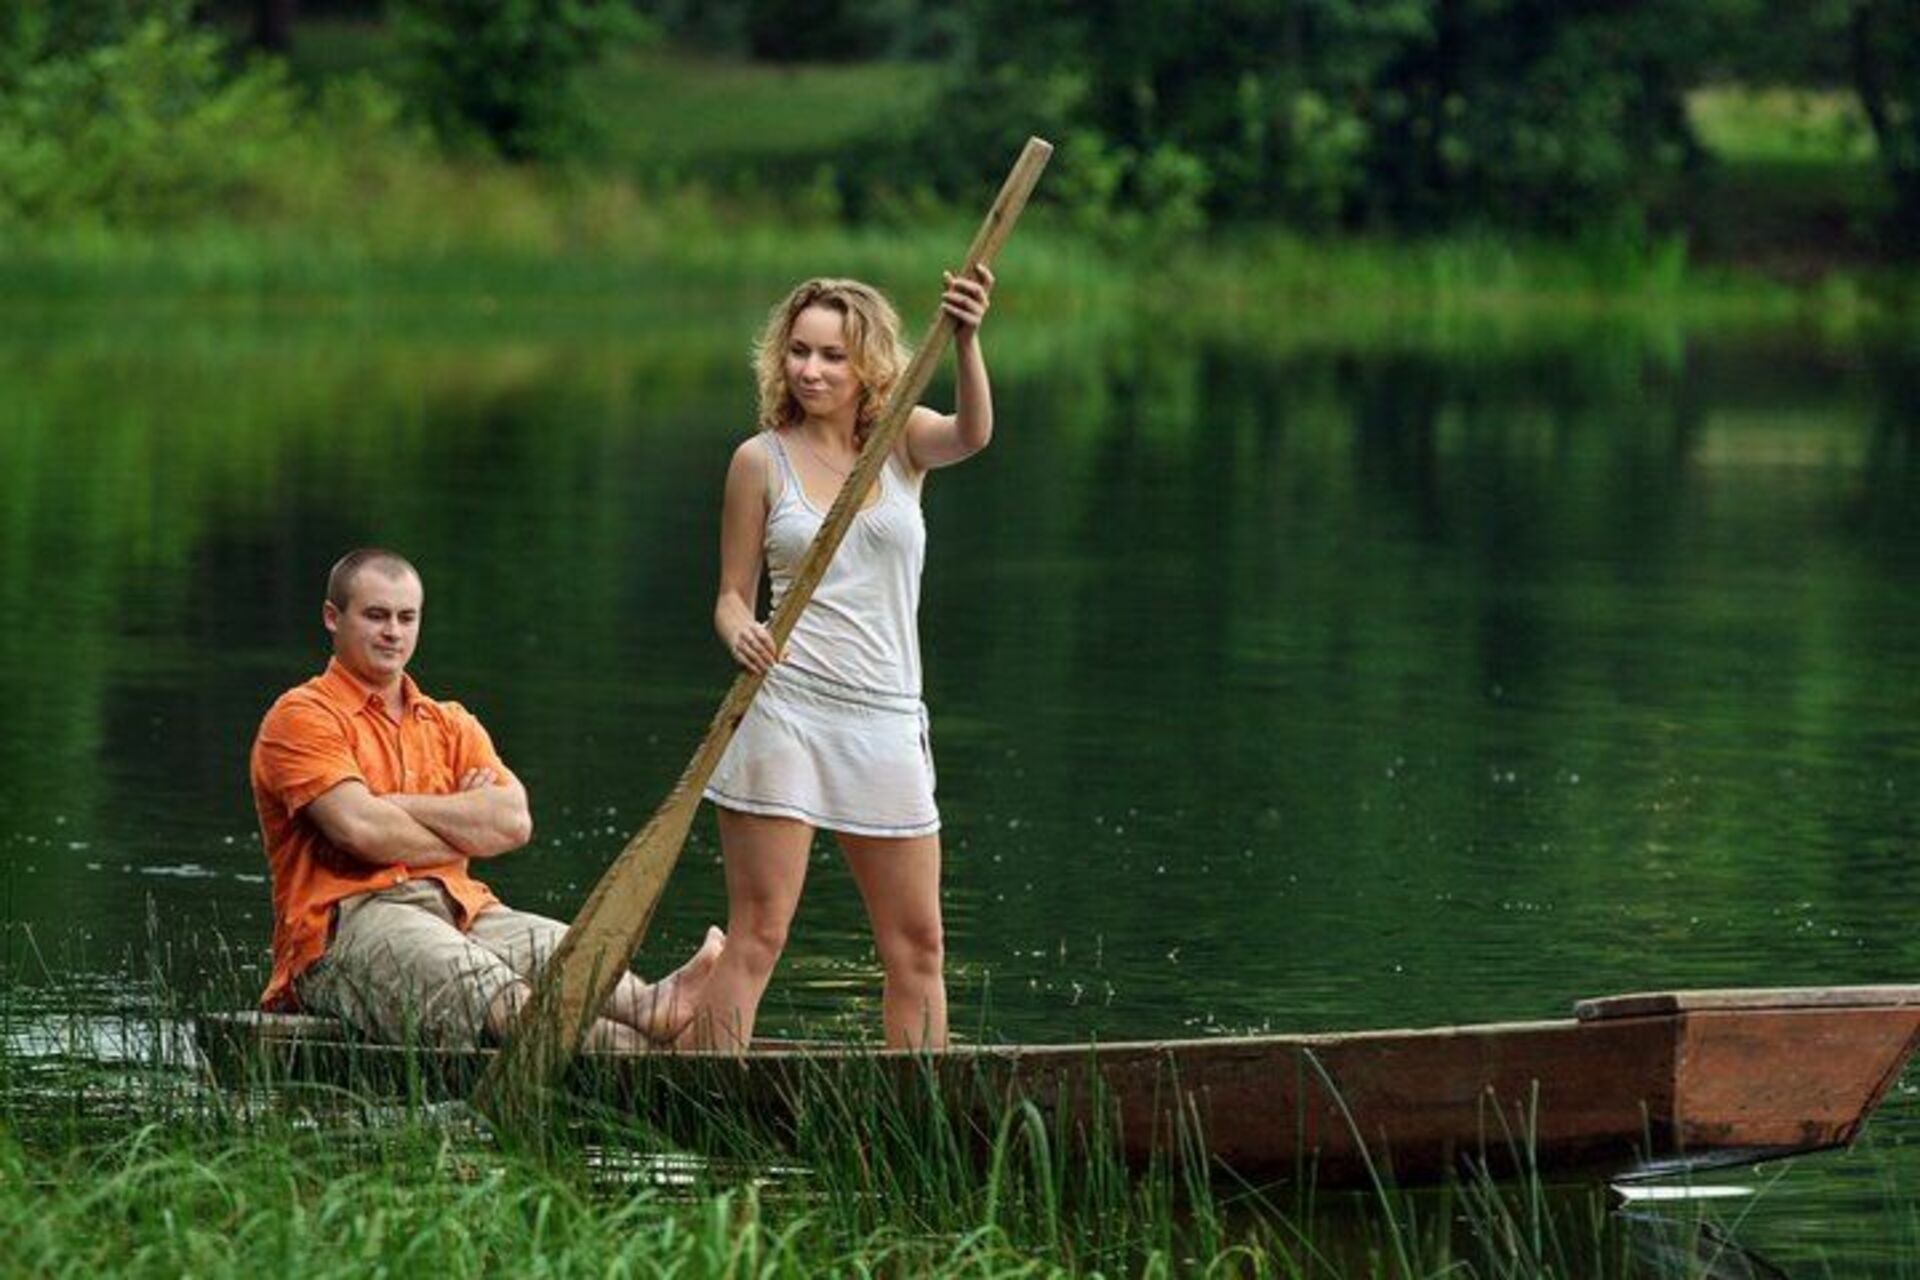 Муж отдыхает без жены. Девушка на лодке с веслами. Мужчина и женщина на рыбалке. Женщина и мужчина рыбачат. Равноправие мужчин и женщин юмор.